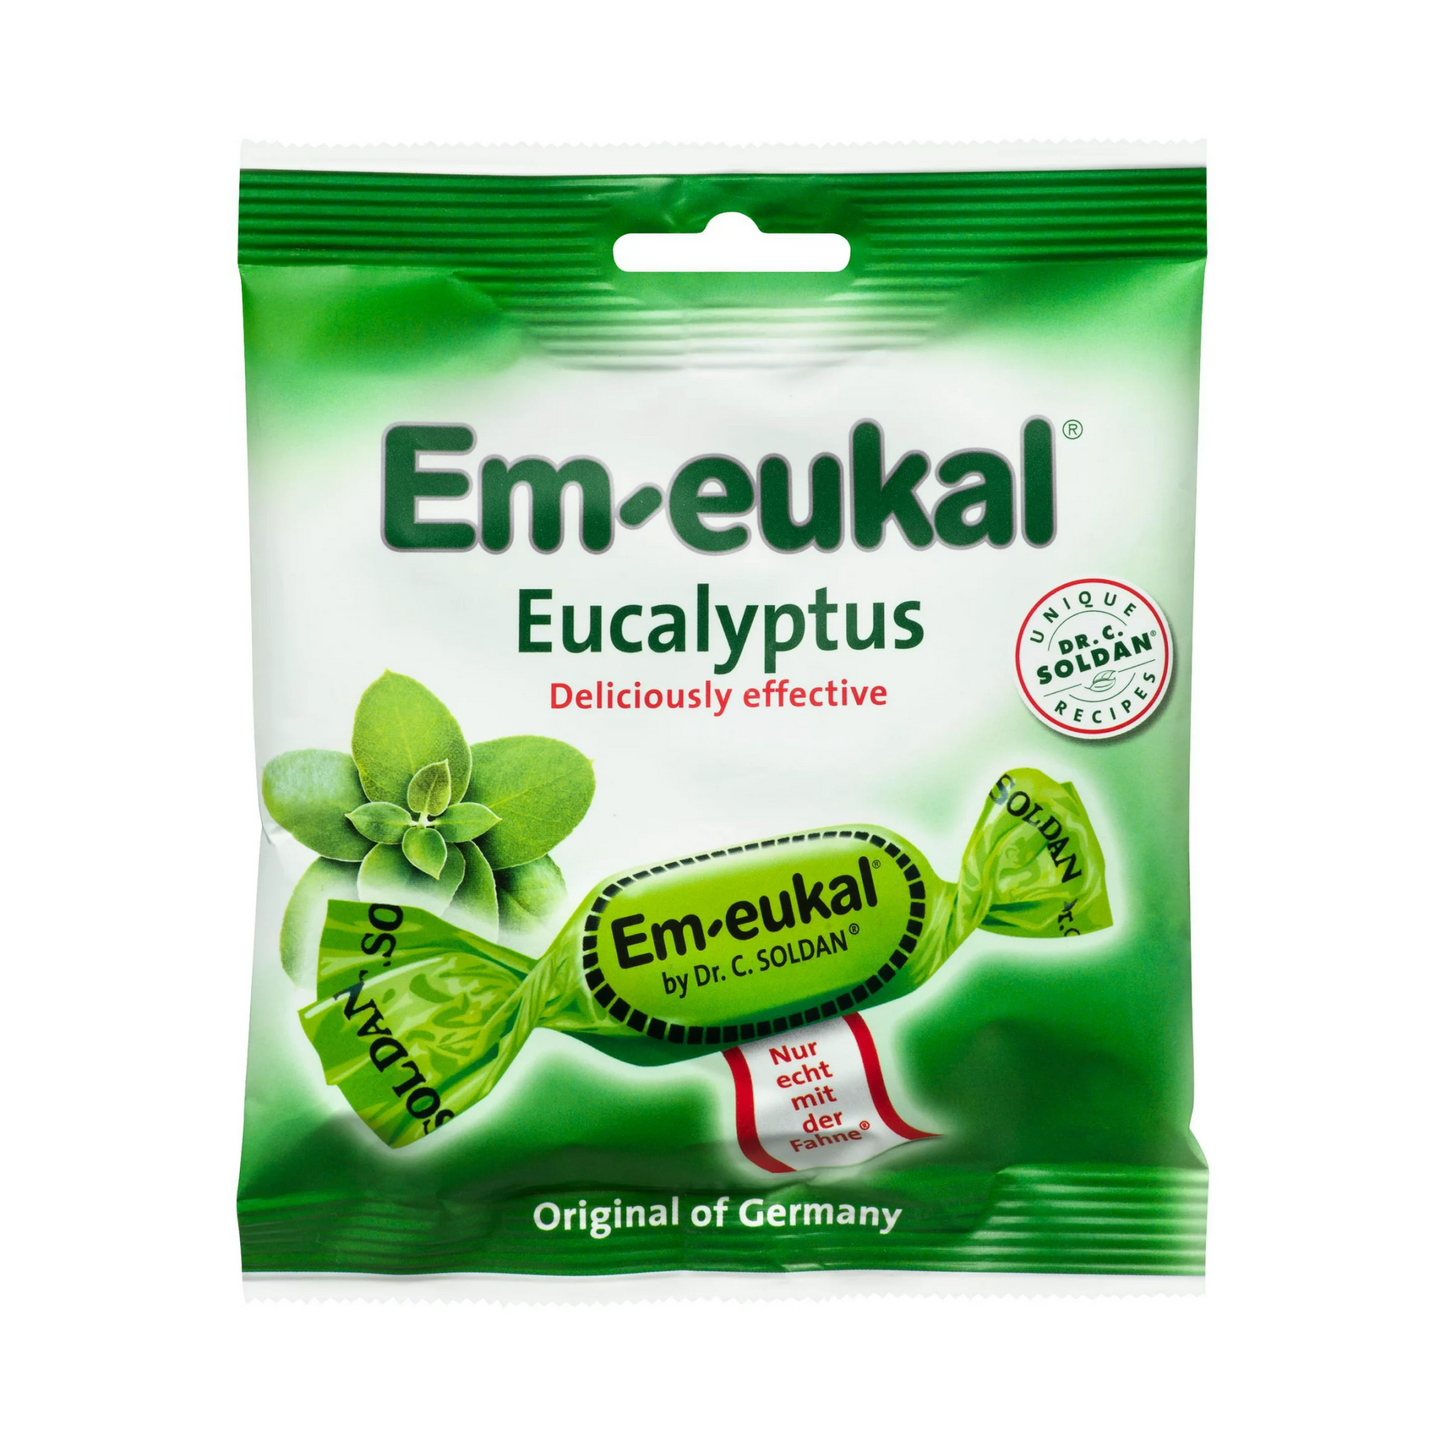 Soldan's Em-eukal Eucalyptus 50g